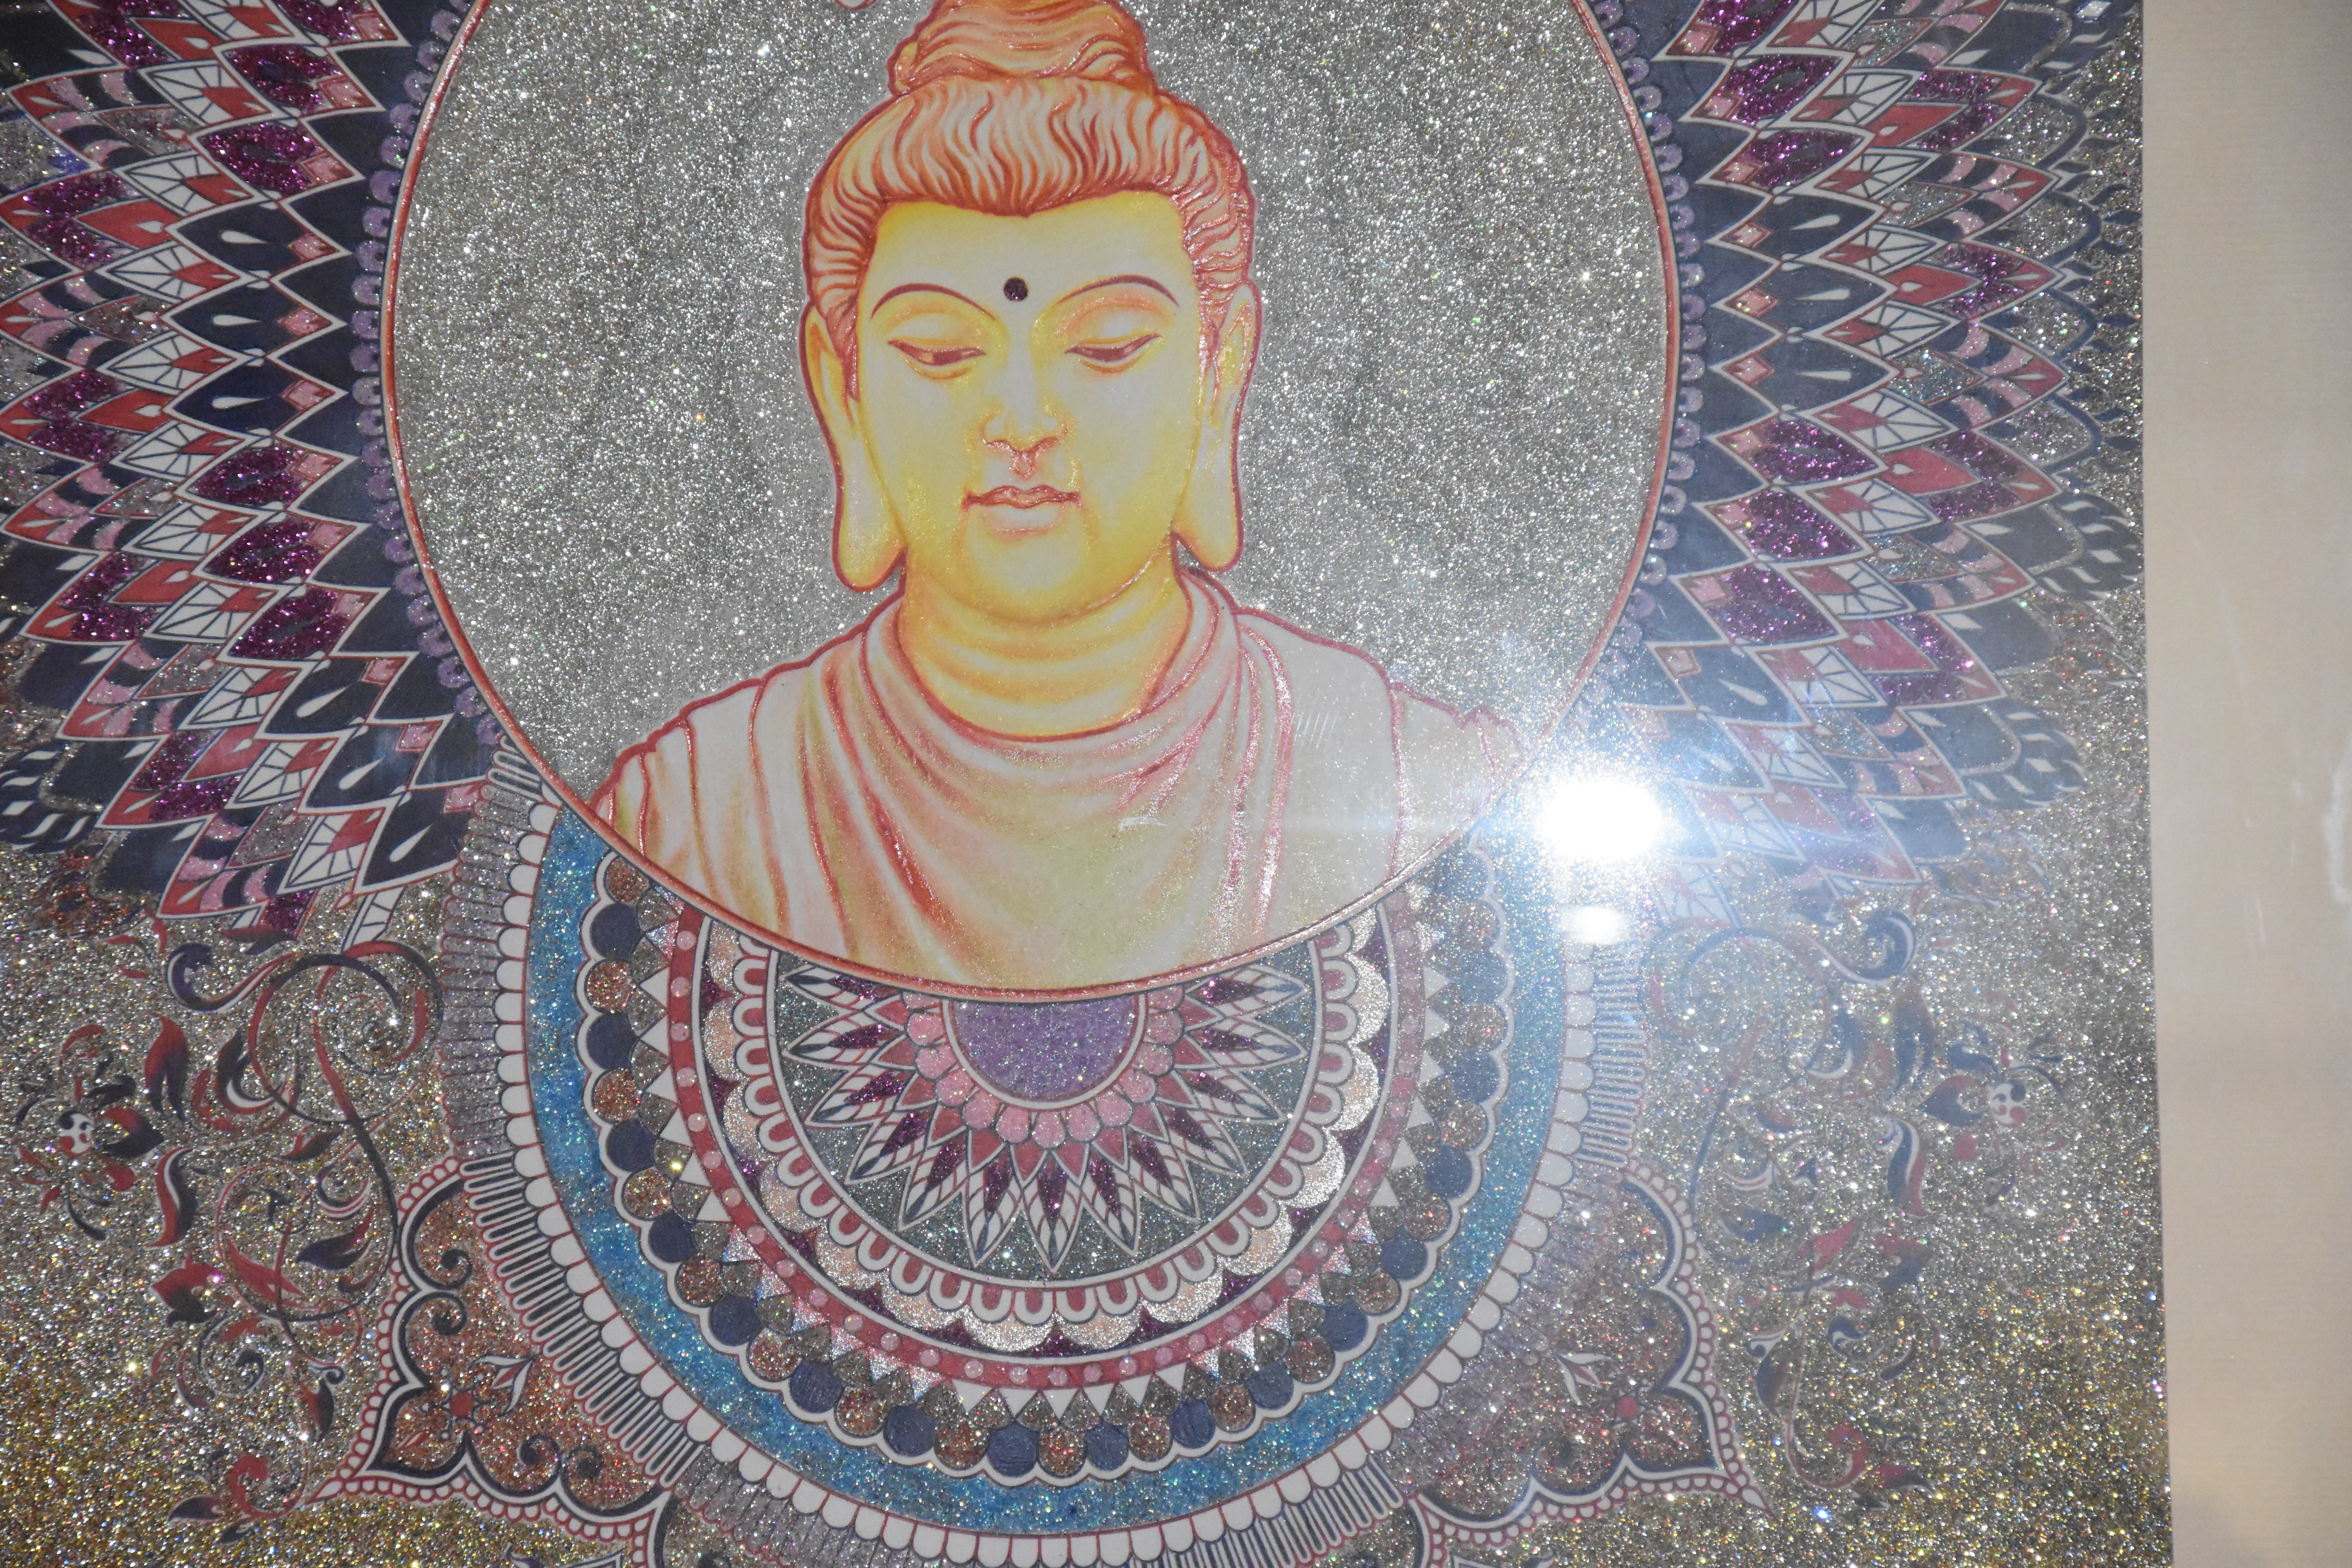 Making Great Strides through Buddhist Art